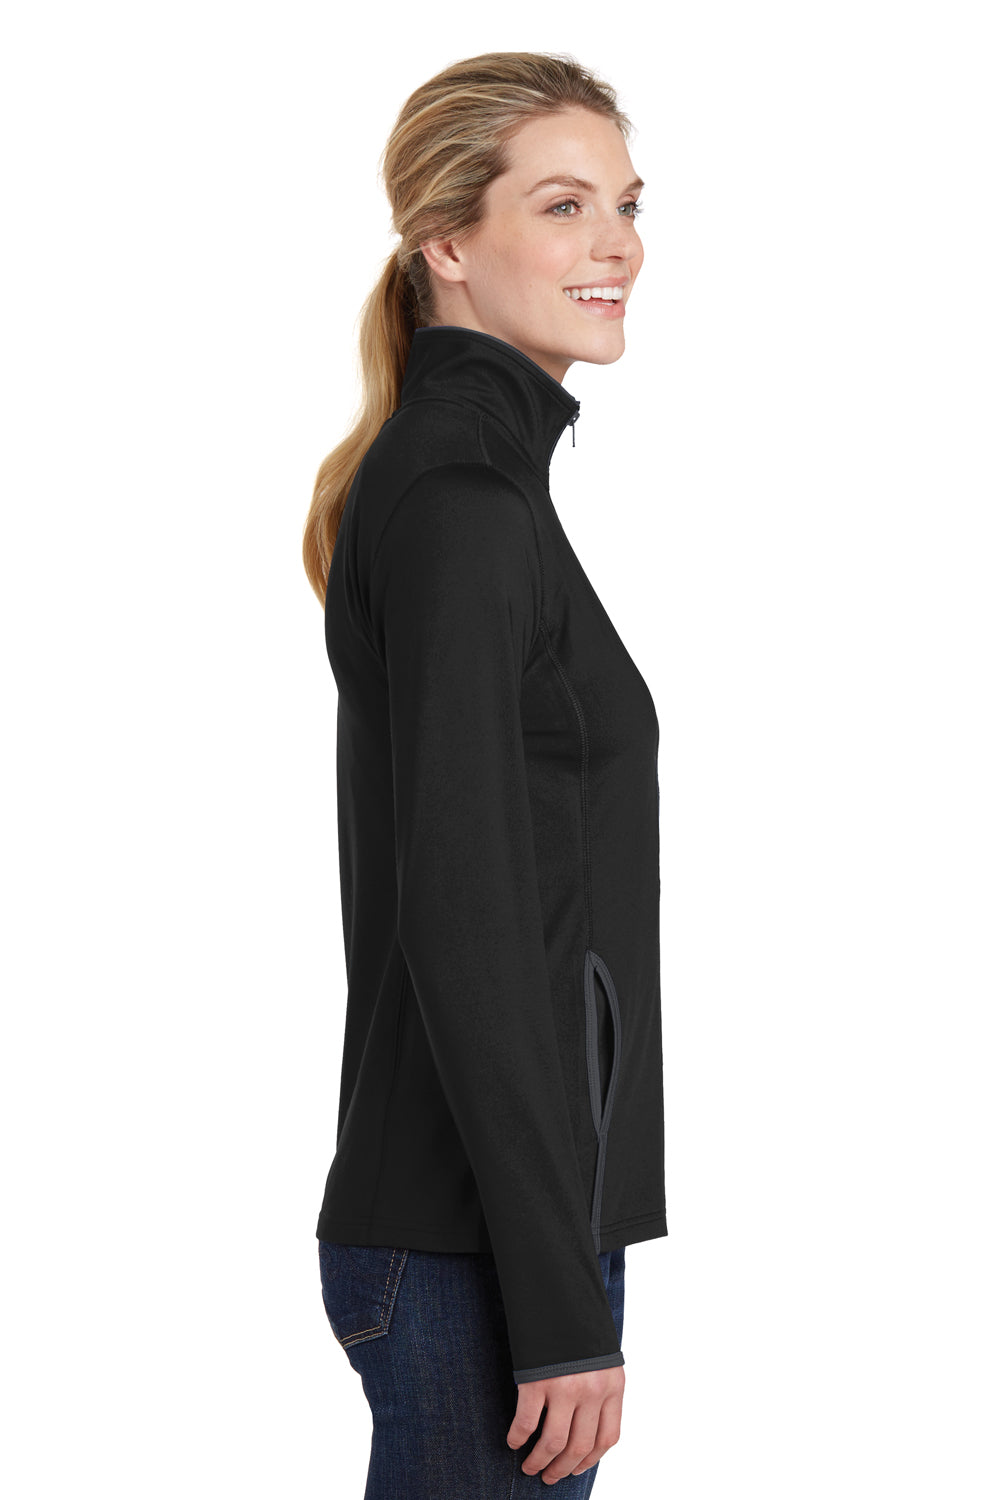 Sport-Tek LST853 Womens Sport-Wick Moisture Wicking Full Zip Jacket Black/Grey Side